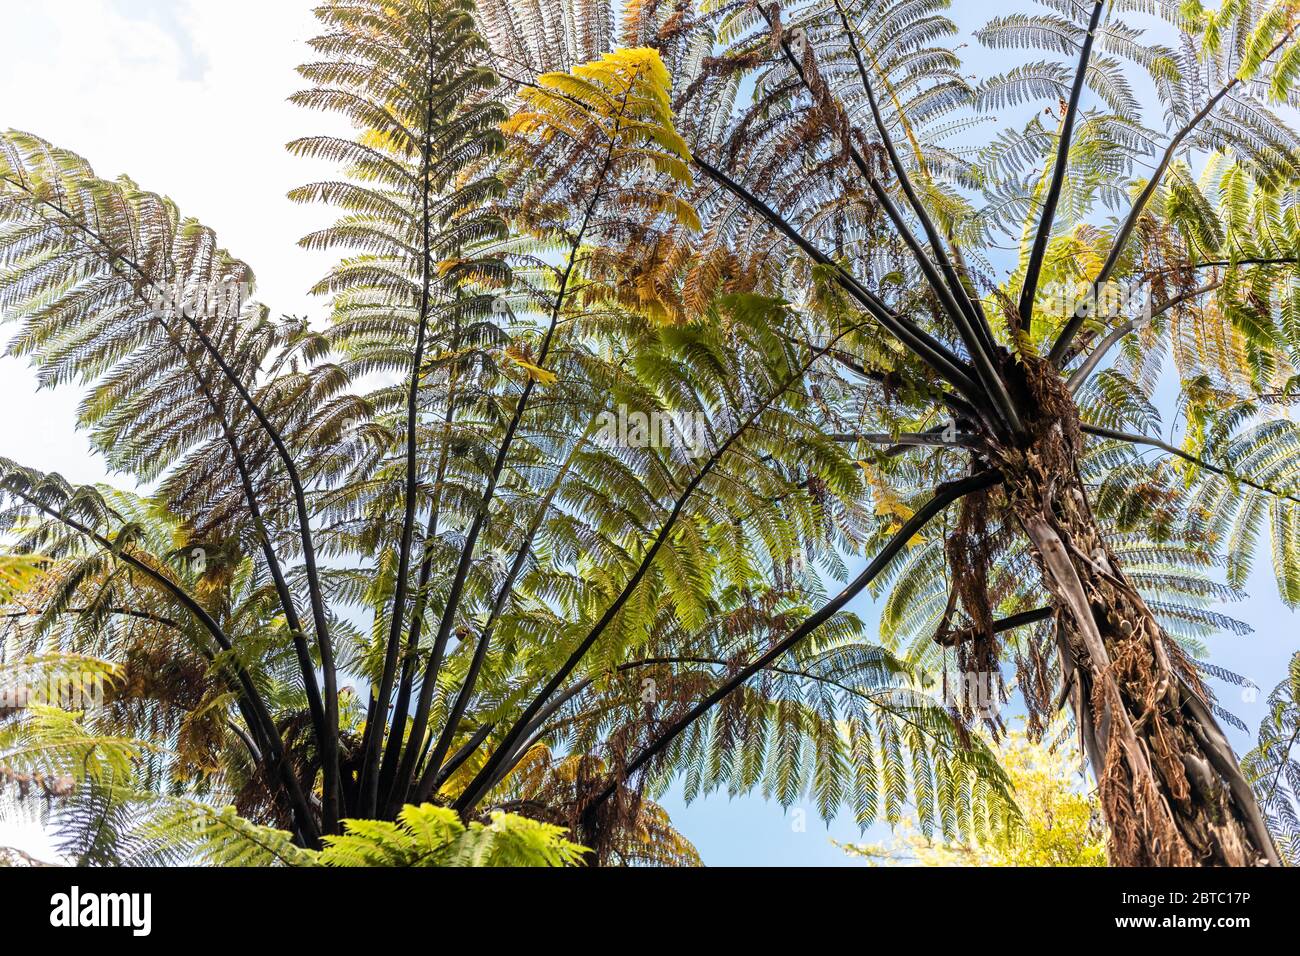 Underside of a black tree fern, New Zealand Stock Photo